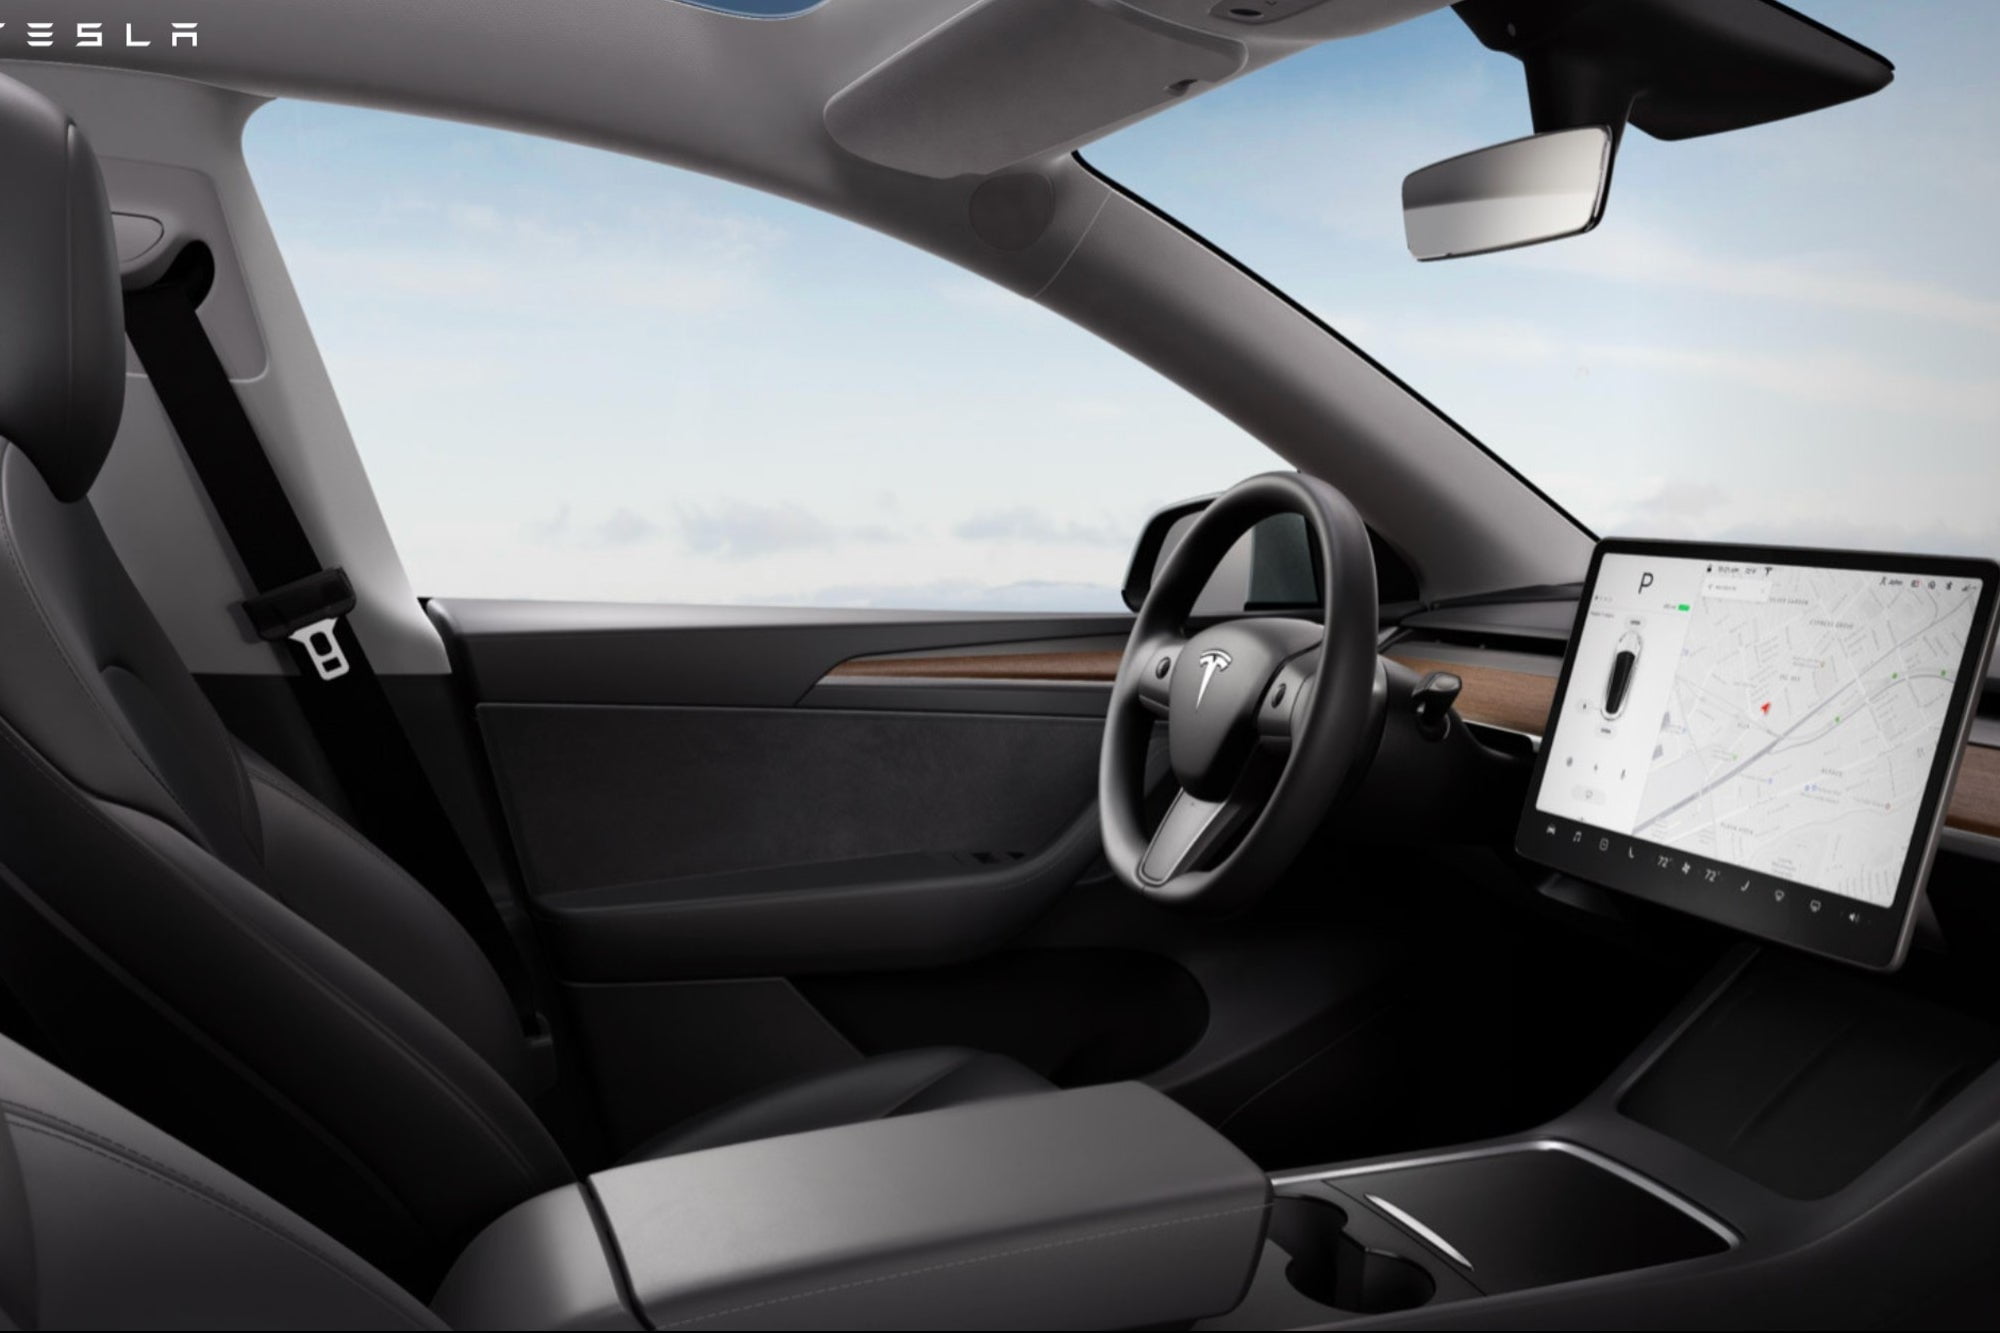 Photos: Tesla updates Model Y interior design